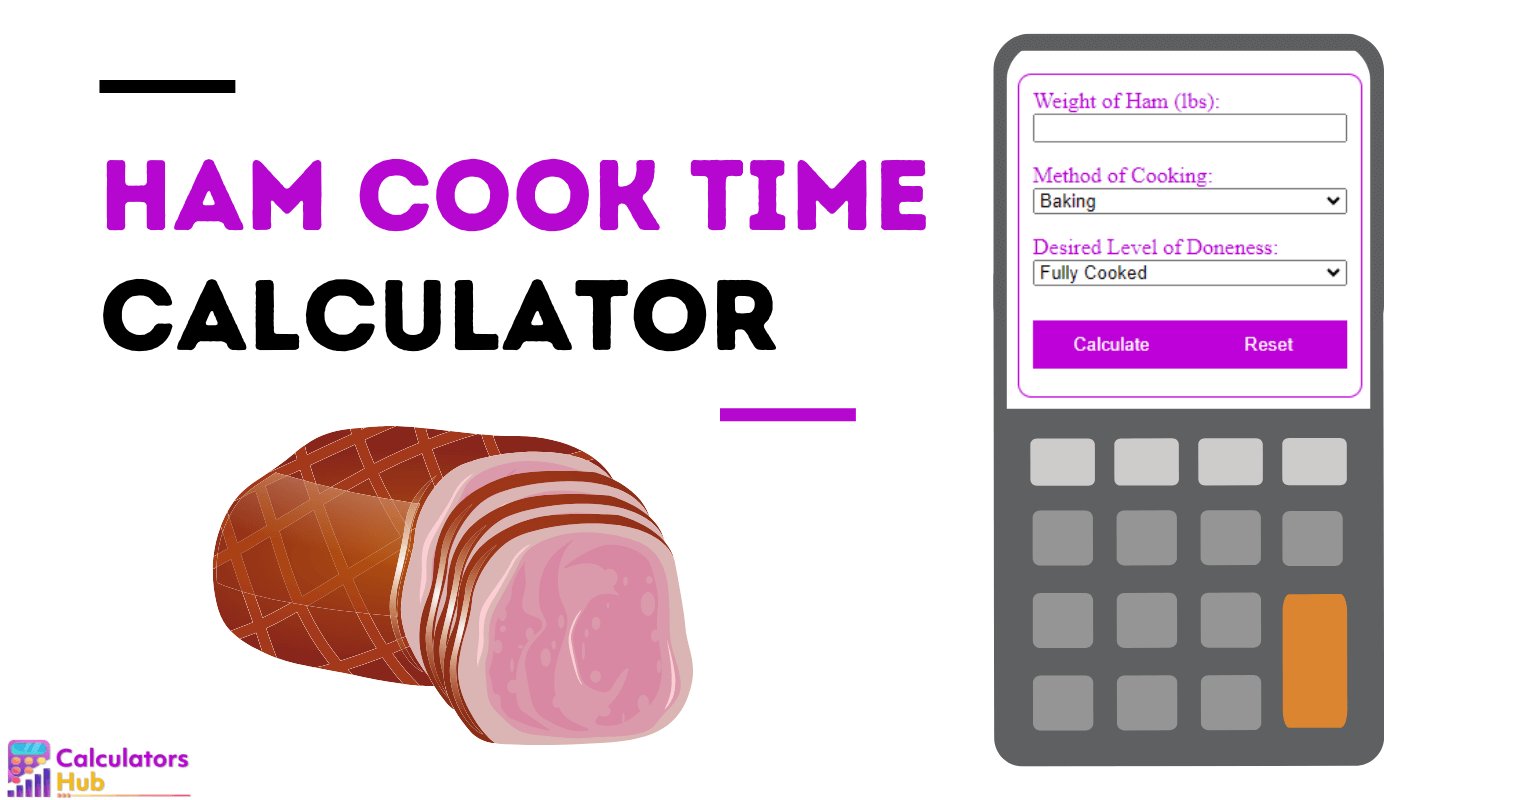 Calculateur de temps de cuisson du jambon